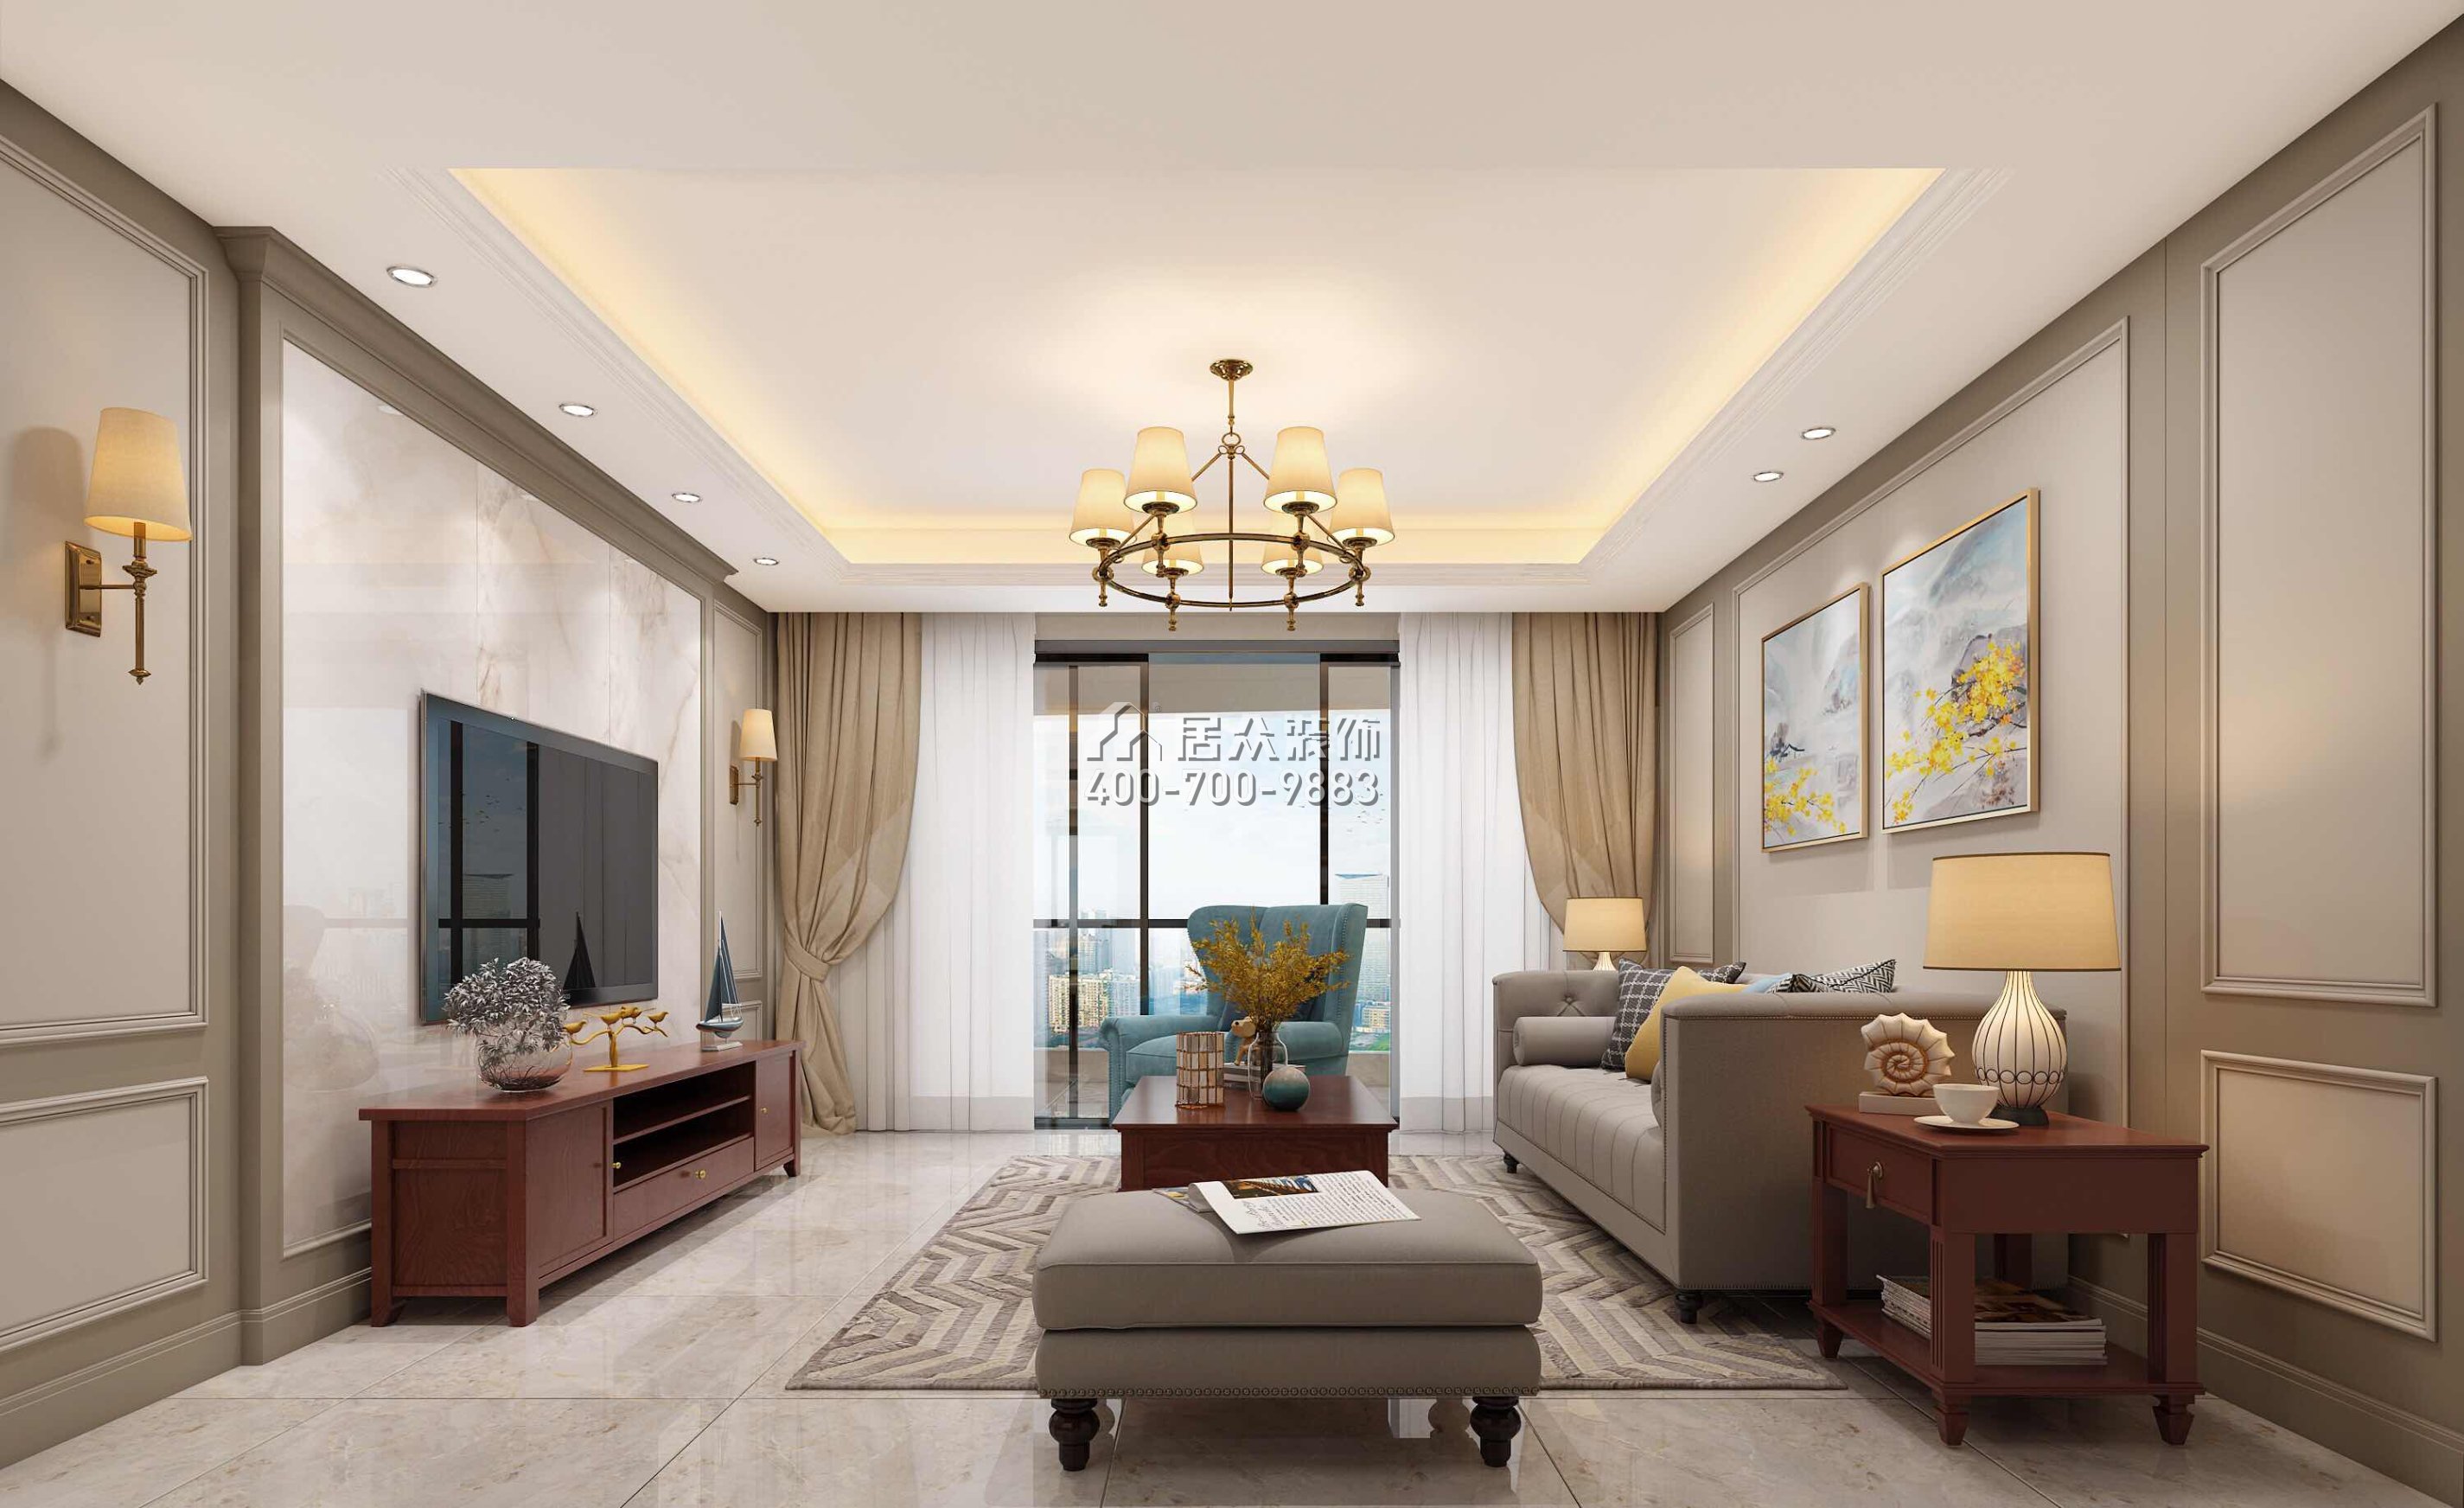 冠城世家145平方米美式风格平层户型客厅装修效果图